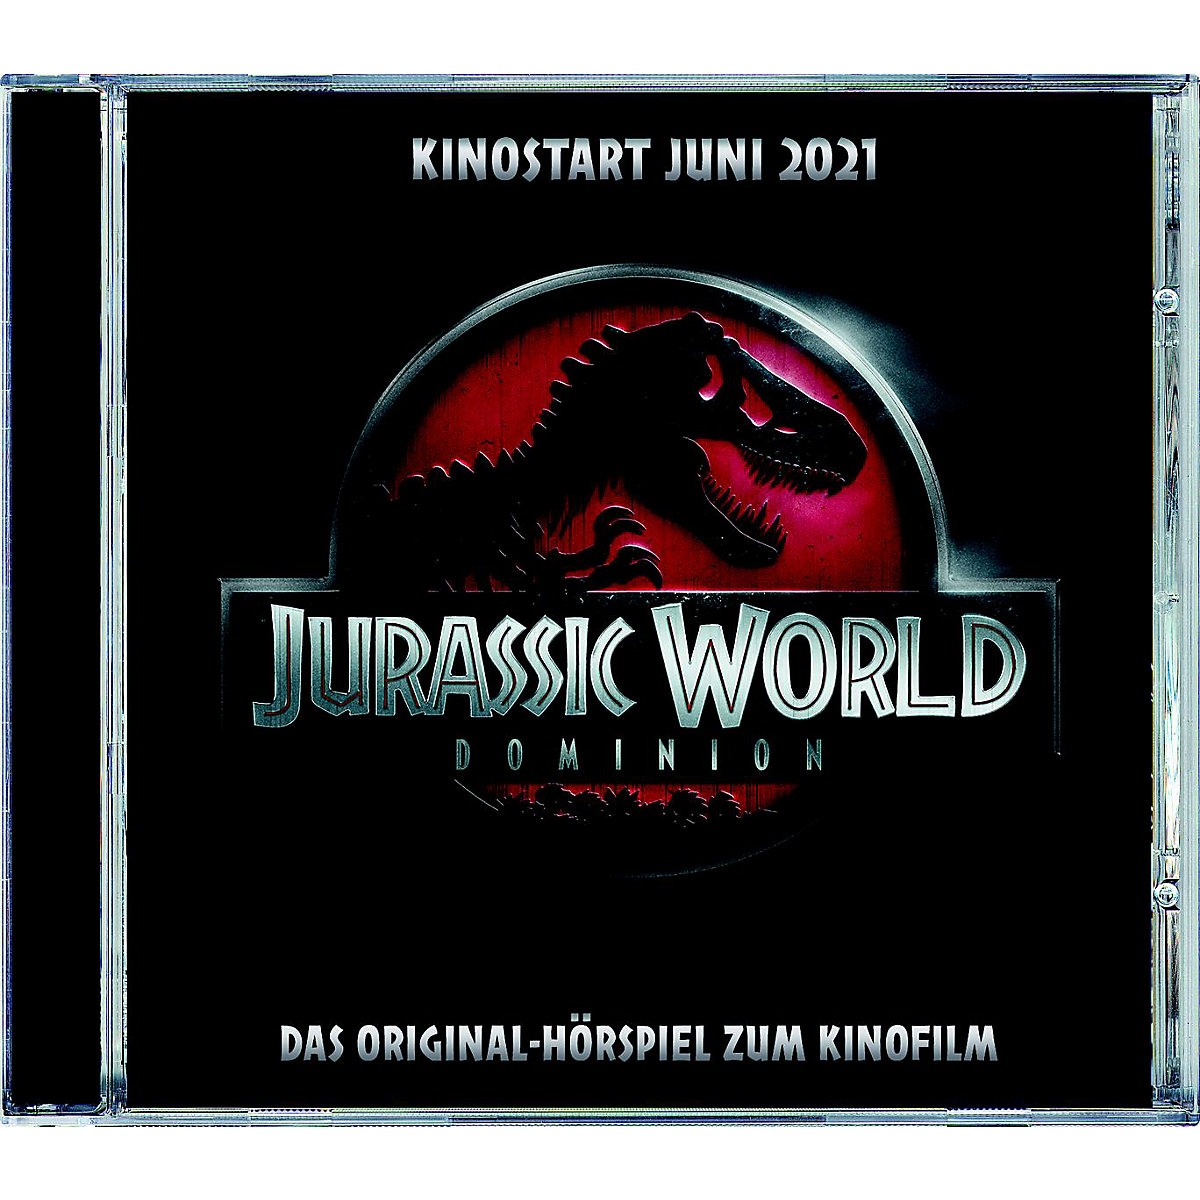 Jurassic World 3 Hörspiel zum Kinofilm